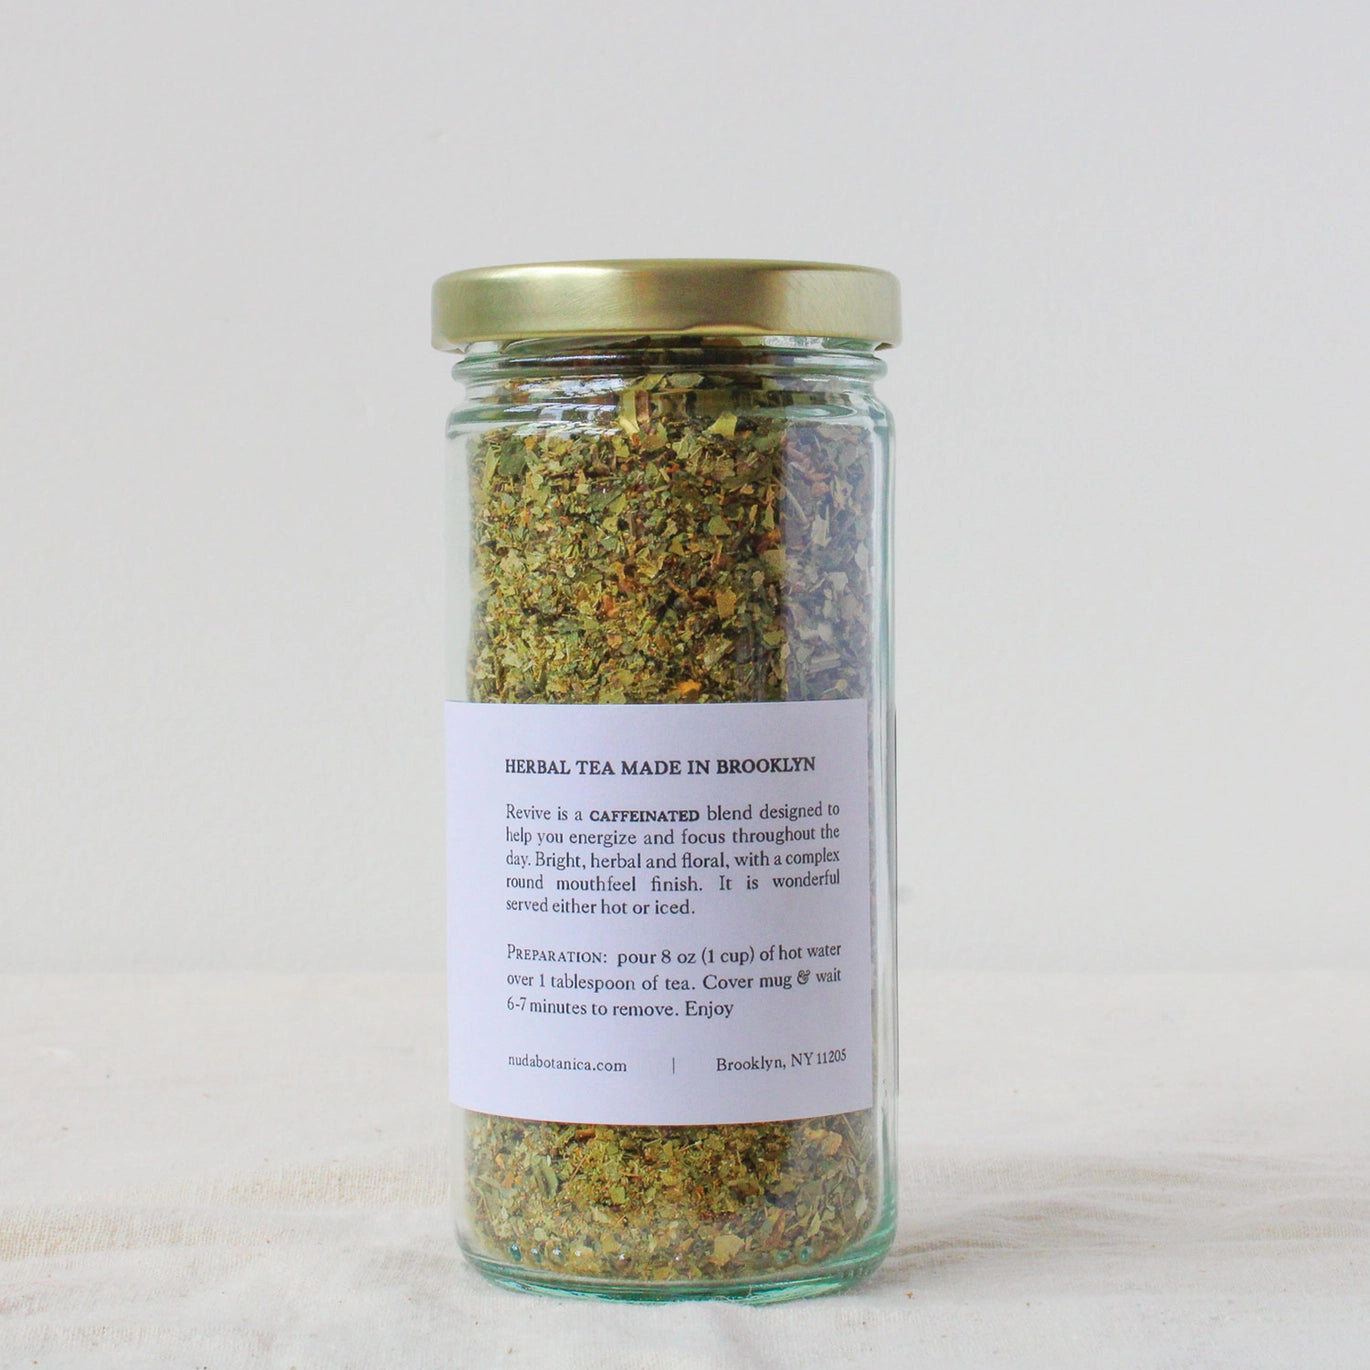 The Revive Organic Herbal Loose Leaf Tea by Nuda Botanica